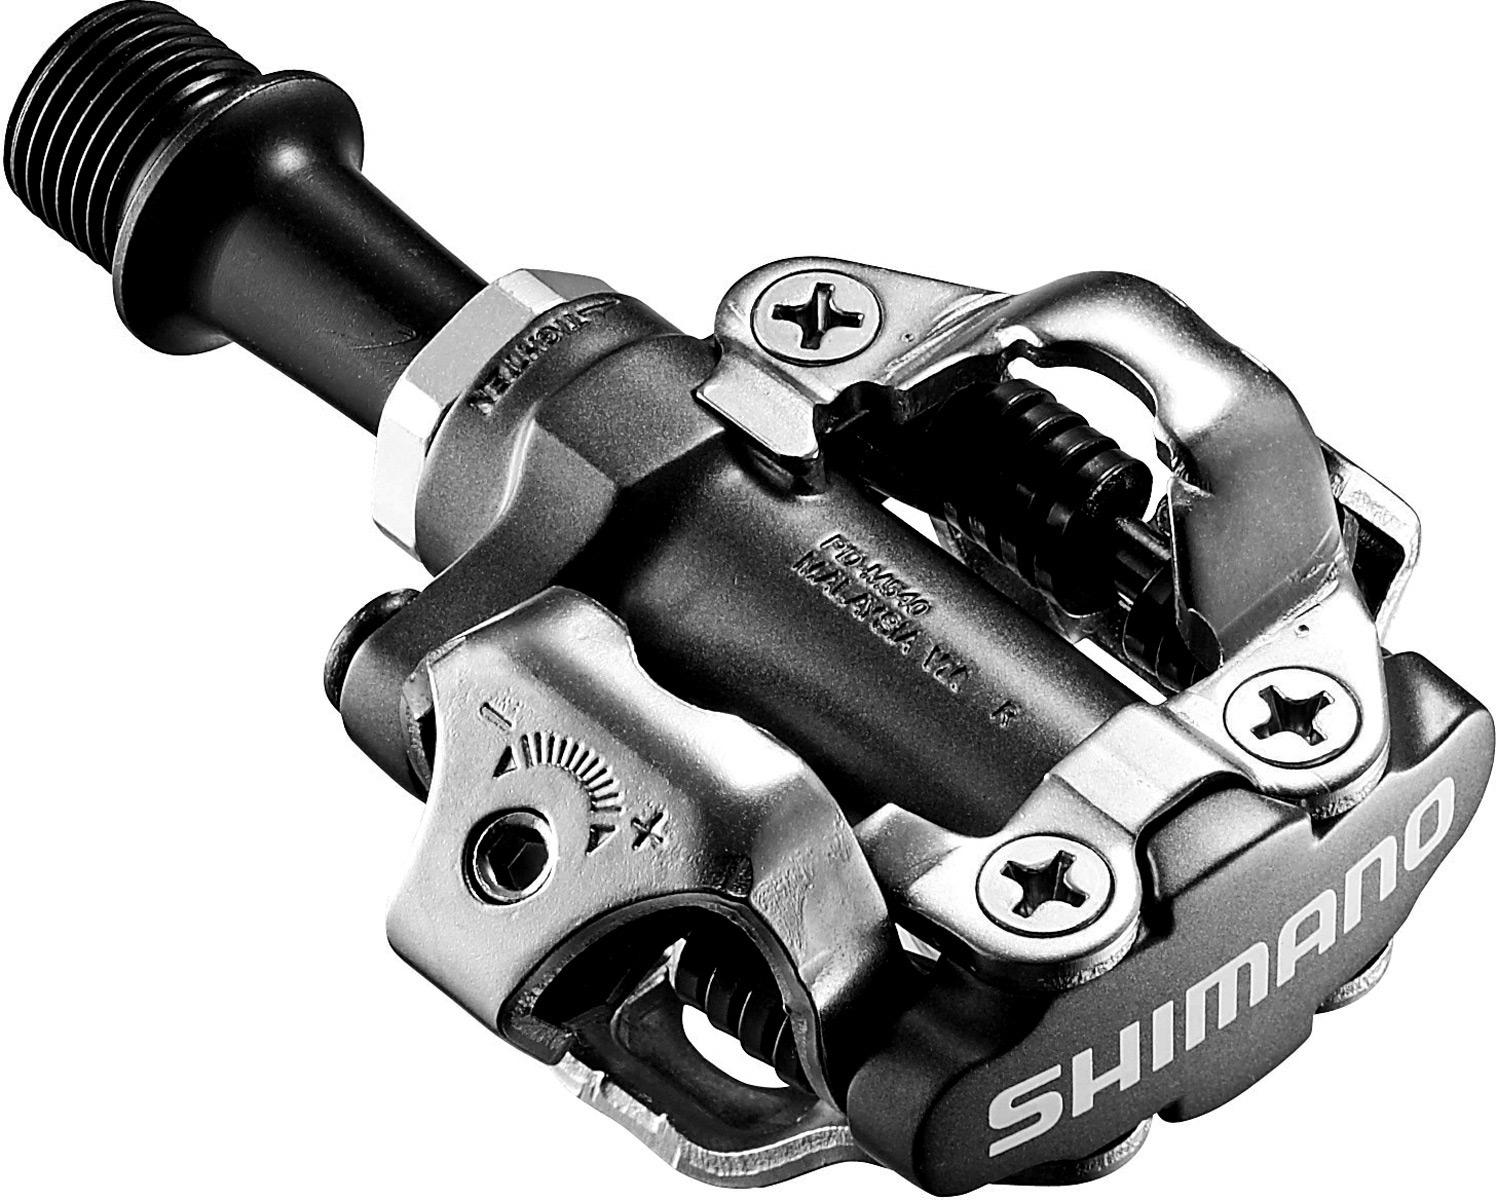 Shimano M540 Mtb Spd Pedals - Black